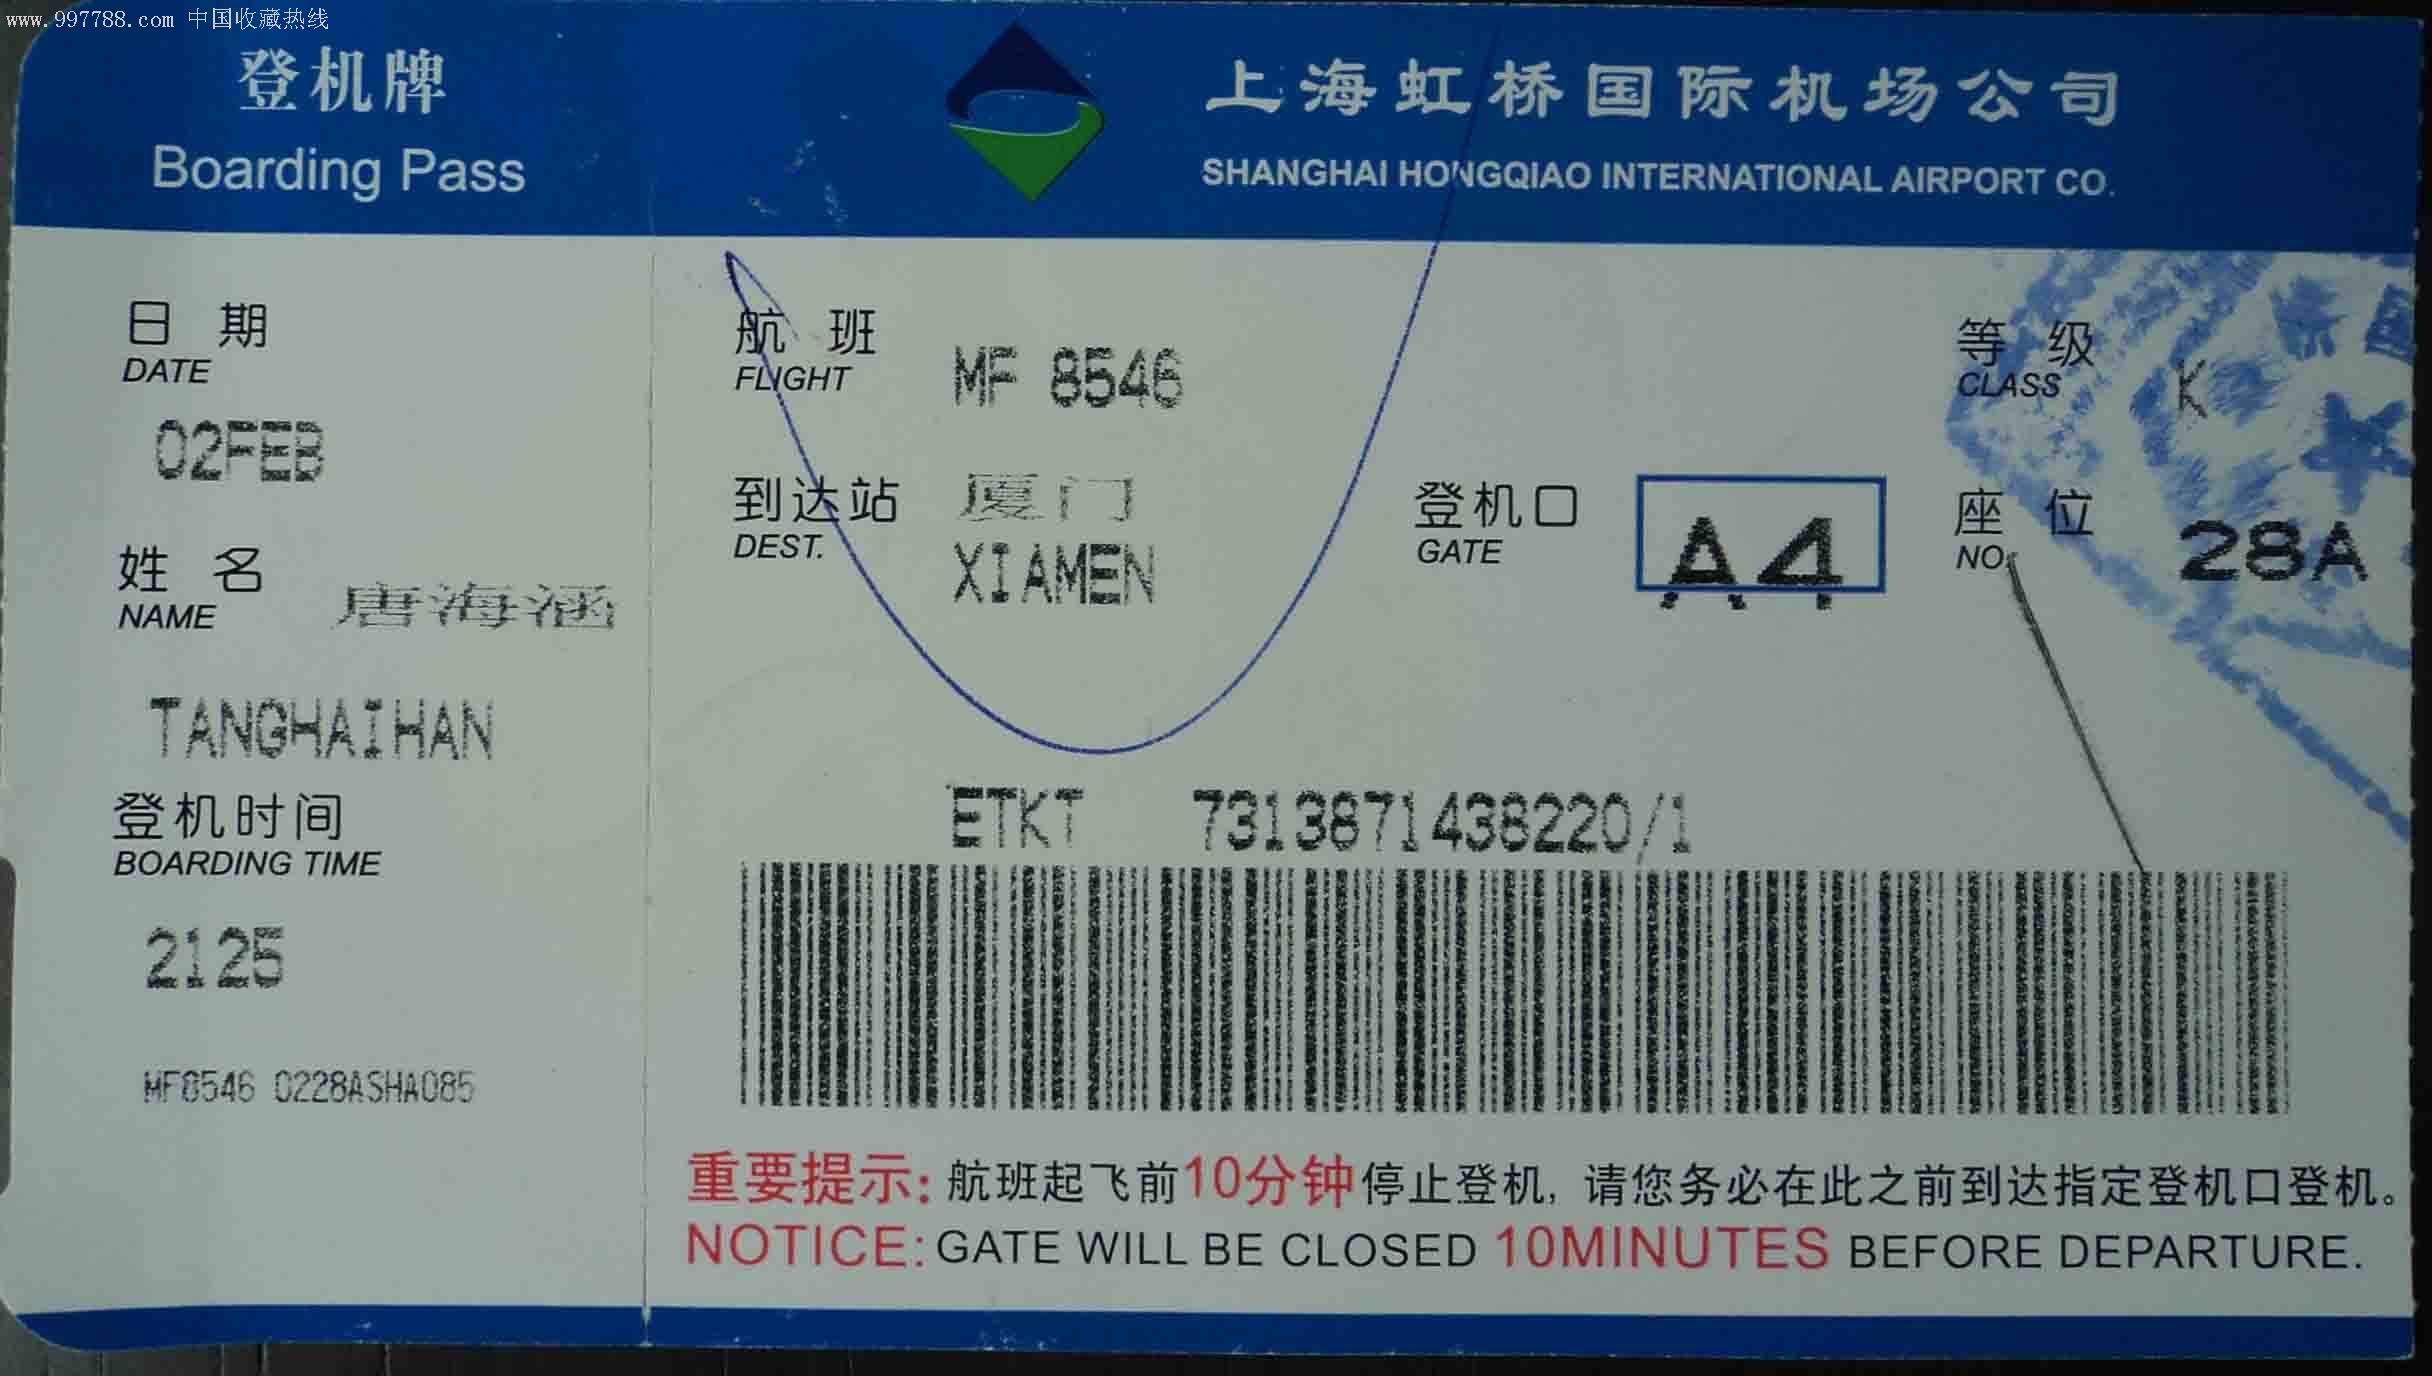 登记牌(上海虹桥国际机场公司)